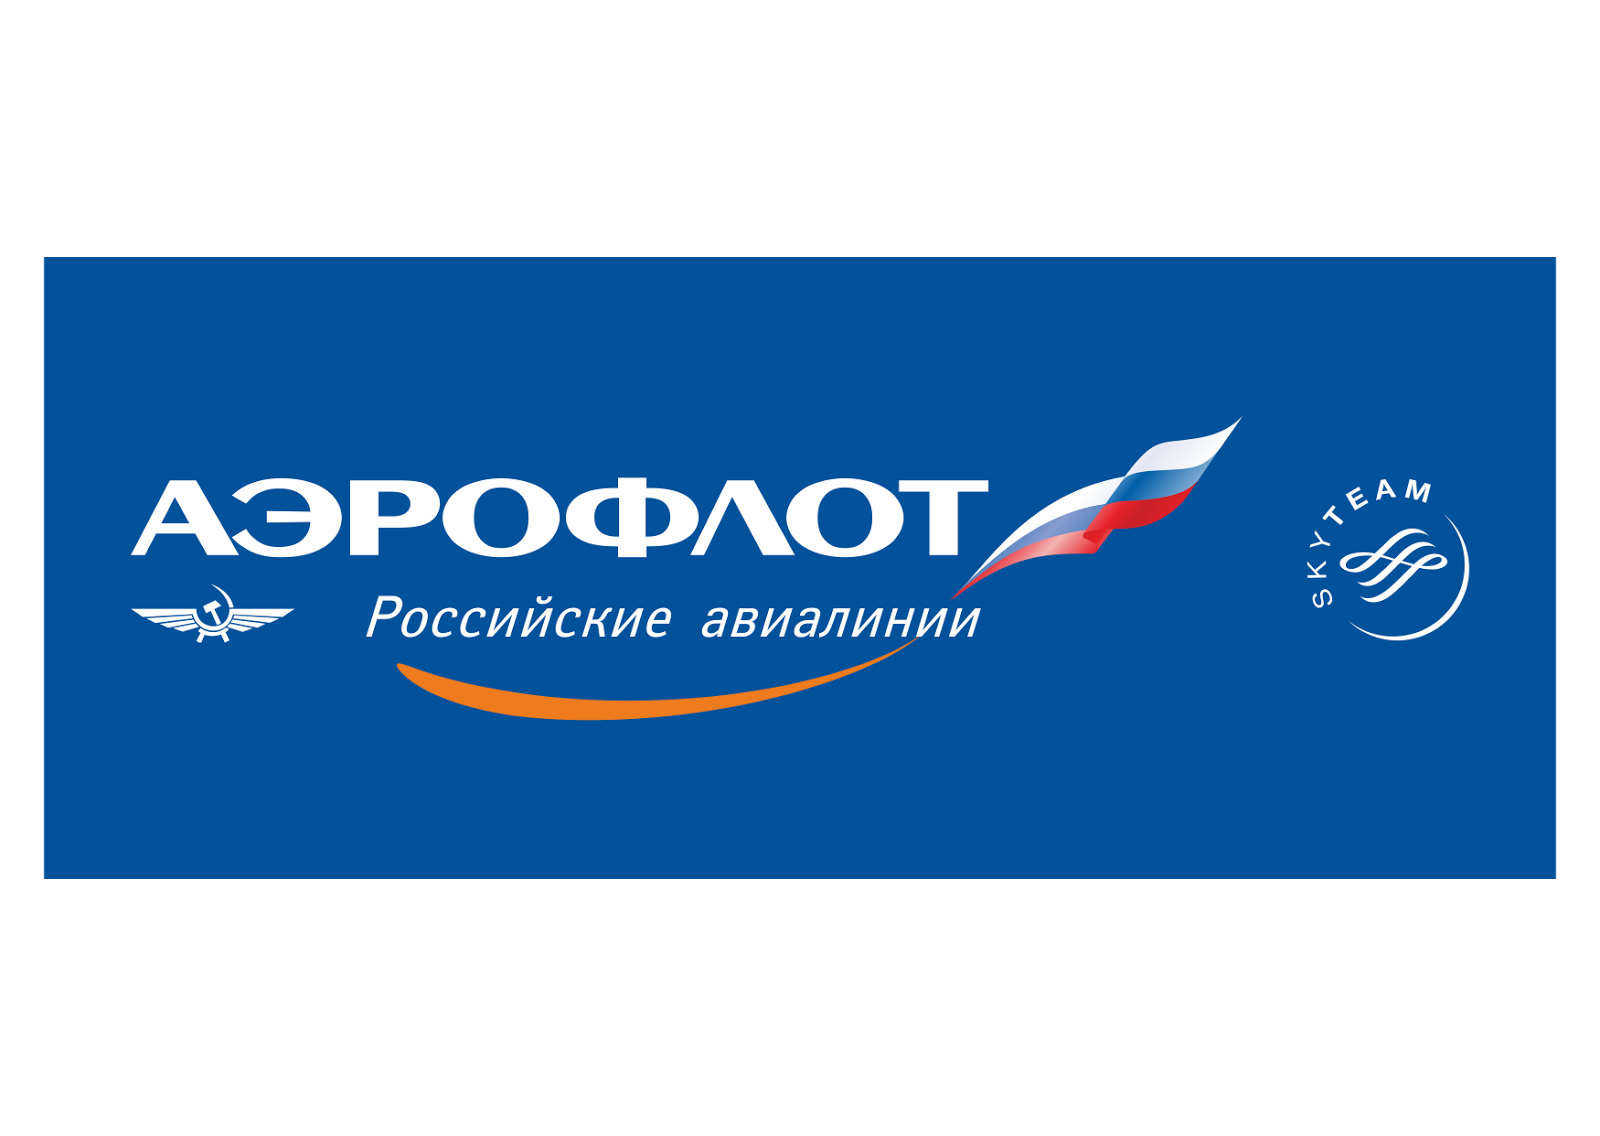 Aeroflot logo vector .